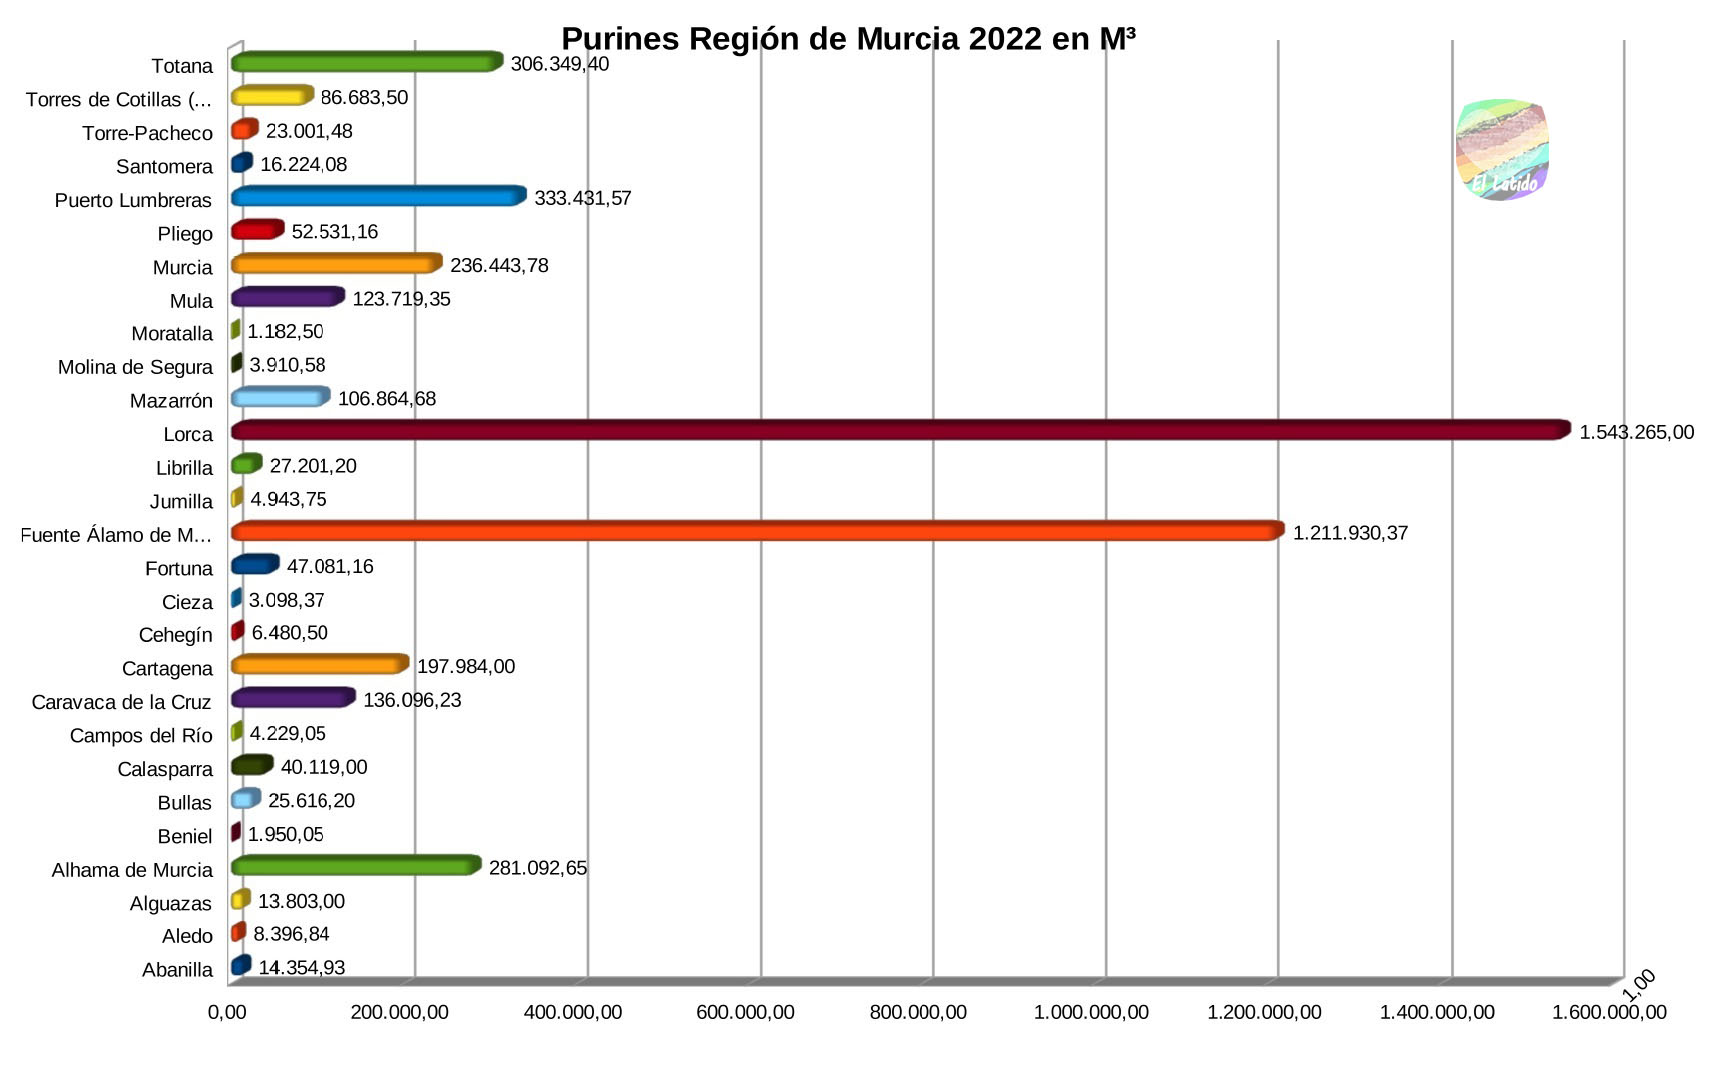 La Región de Murcia genera casi 5 millones M³ de purines al año, produciendo Lorca y Fuente Álamo en el Campo de Cartagena, casi el 57%